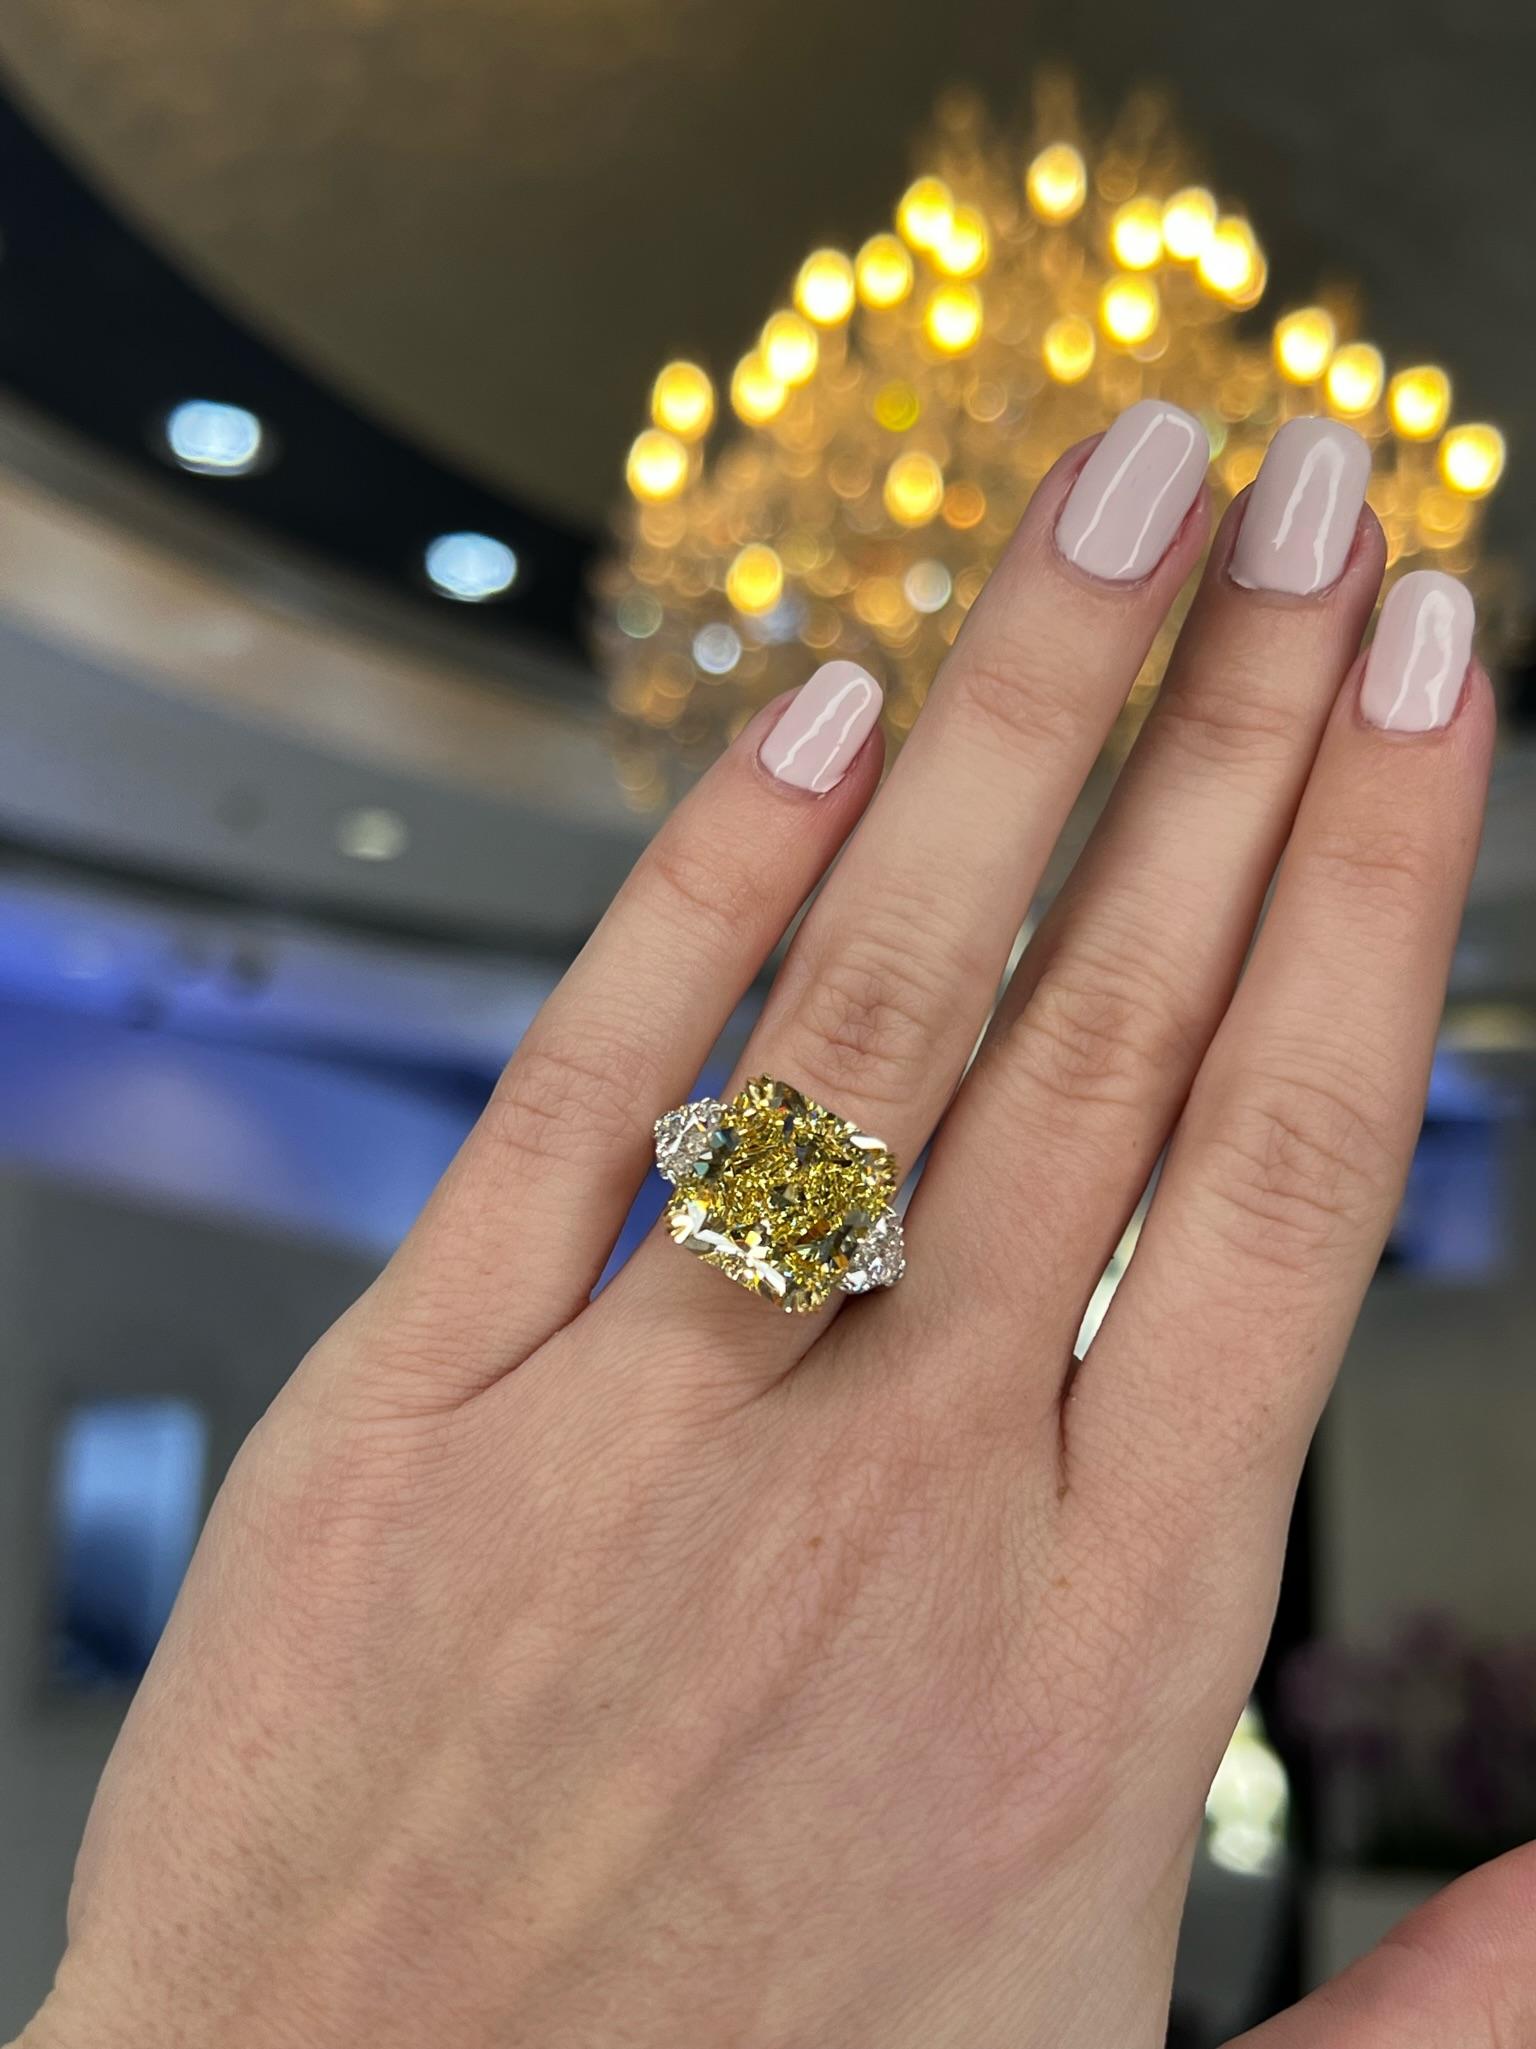 David Rosenberg 10.23 Radiant Fancy Yellow VVS1 GIA Diamond Engagement Ring For Sale 5